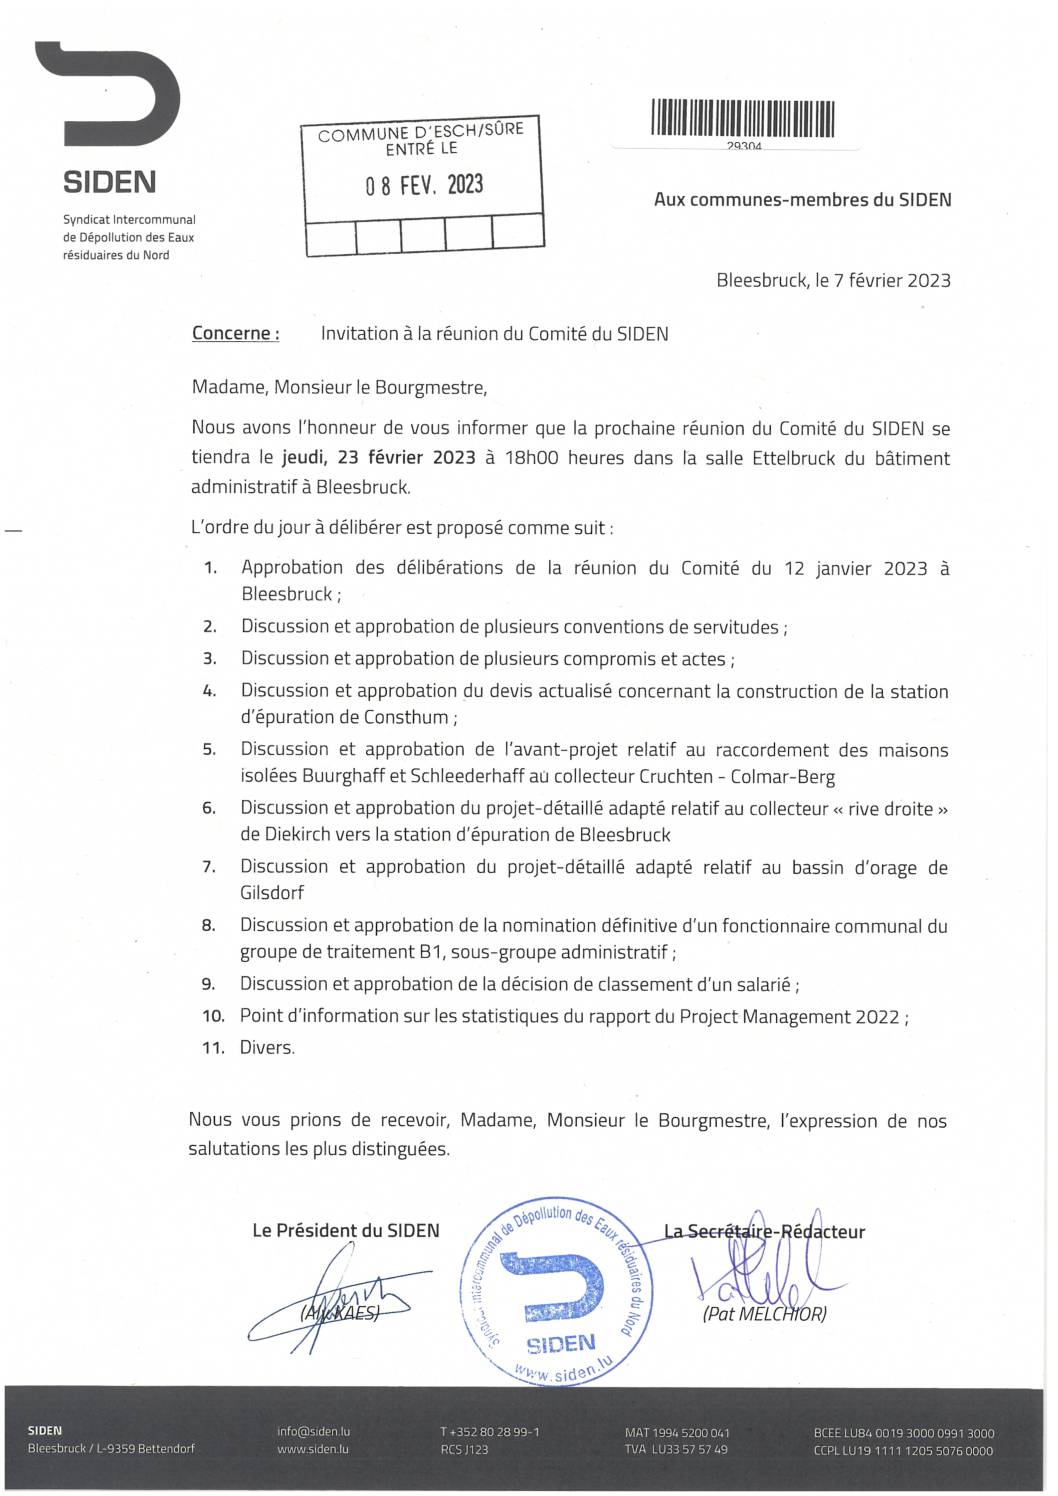 2023.02.10_Convocation comité SIDEN - Réunion du 23.02.2023